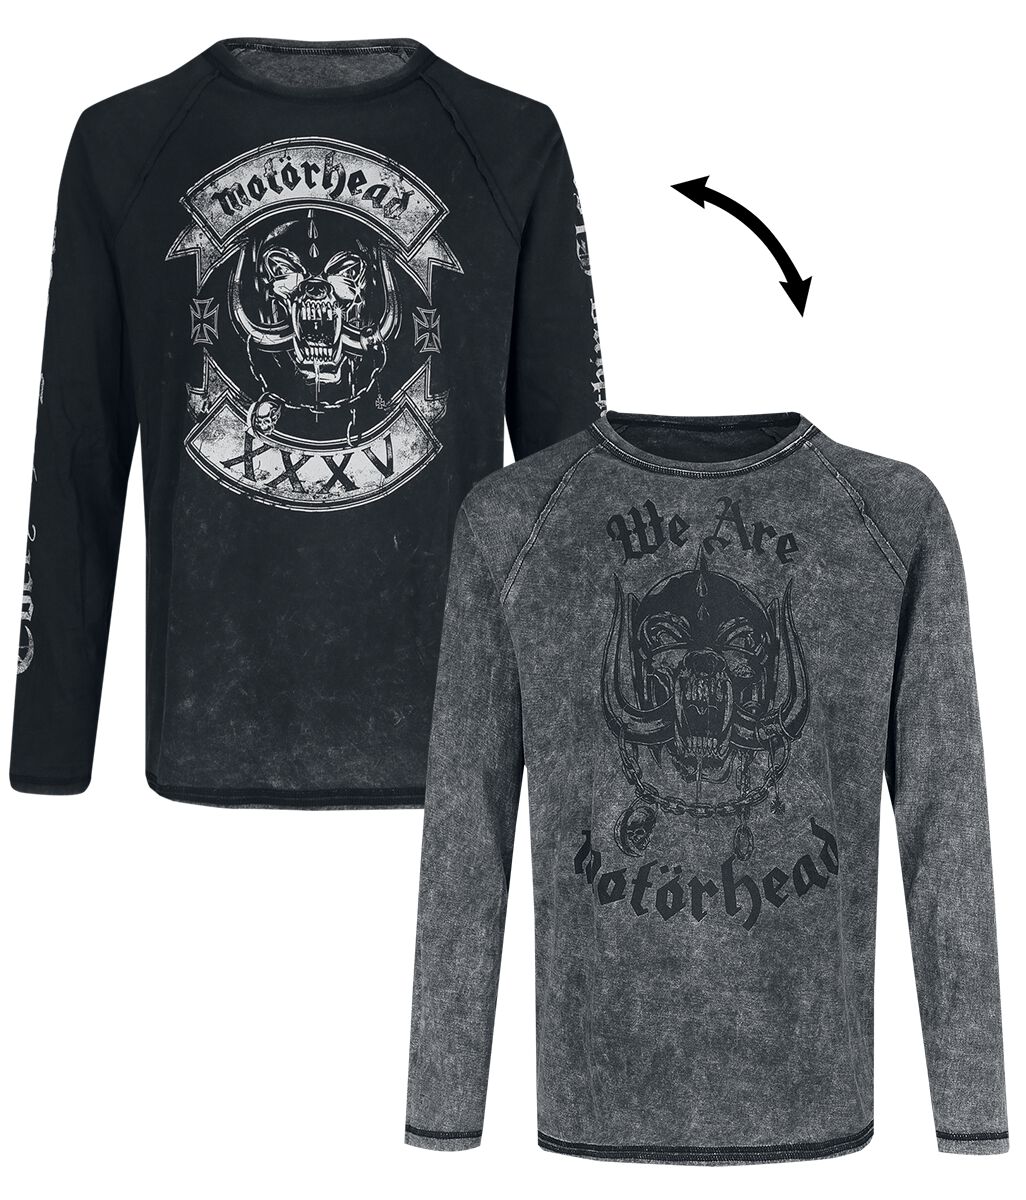 Motörhead Langarmshirt - EMP Signature Collection - S bis 3XL - für Männer - Größe XL - dunkelgrau  - EMP exklusives Merchandise!